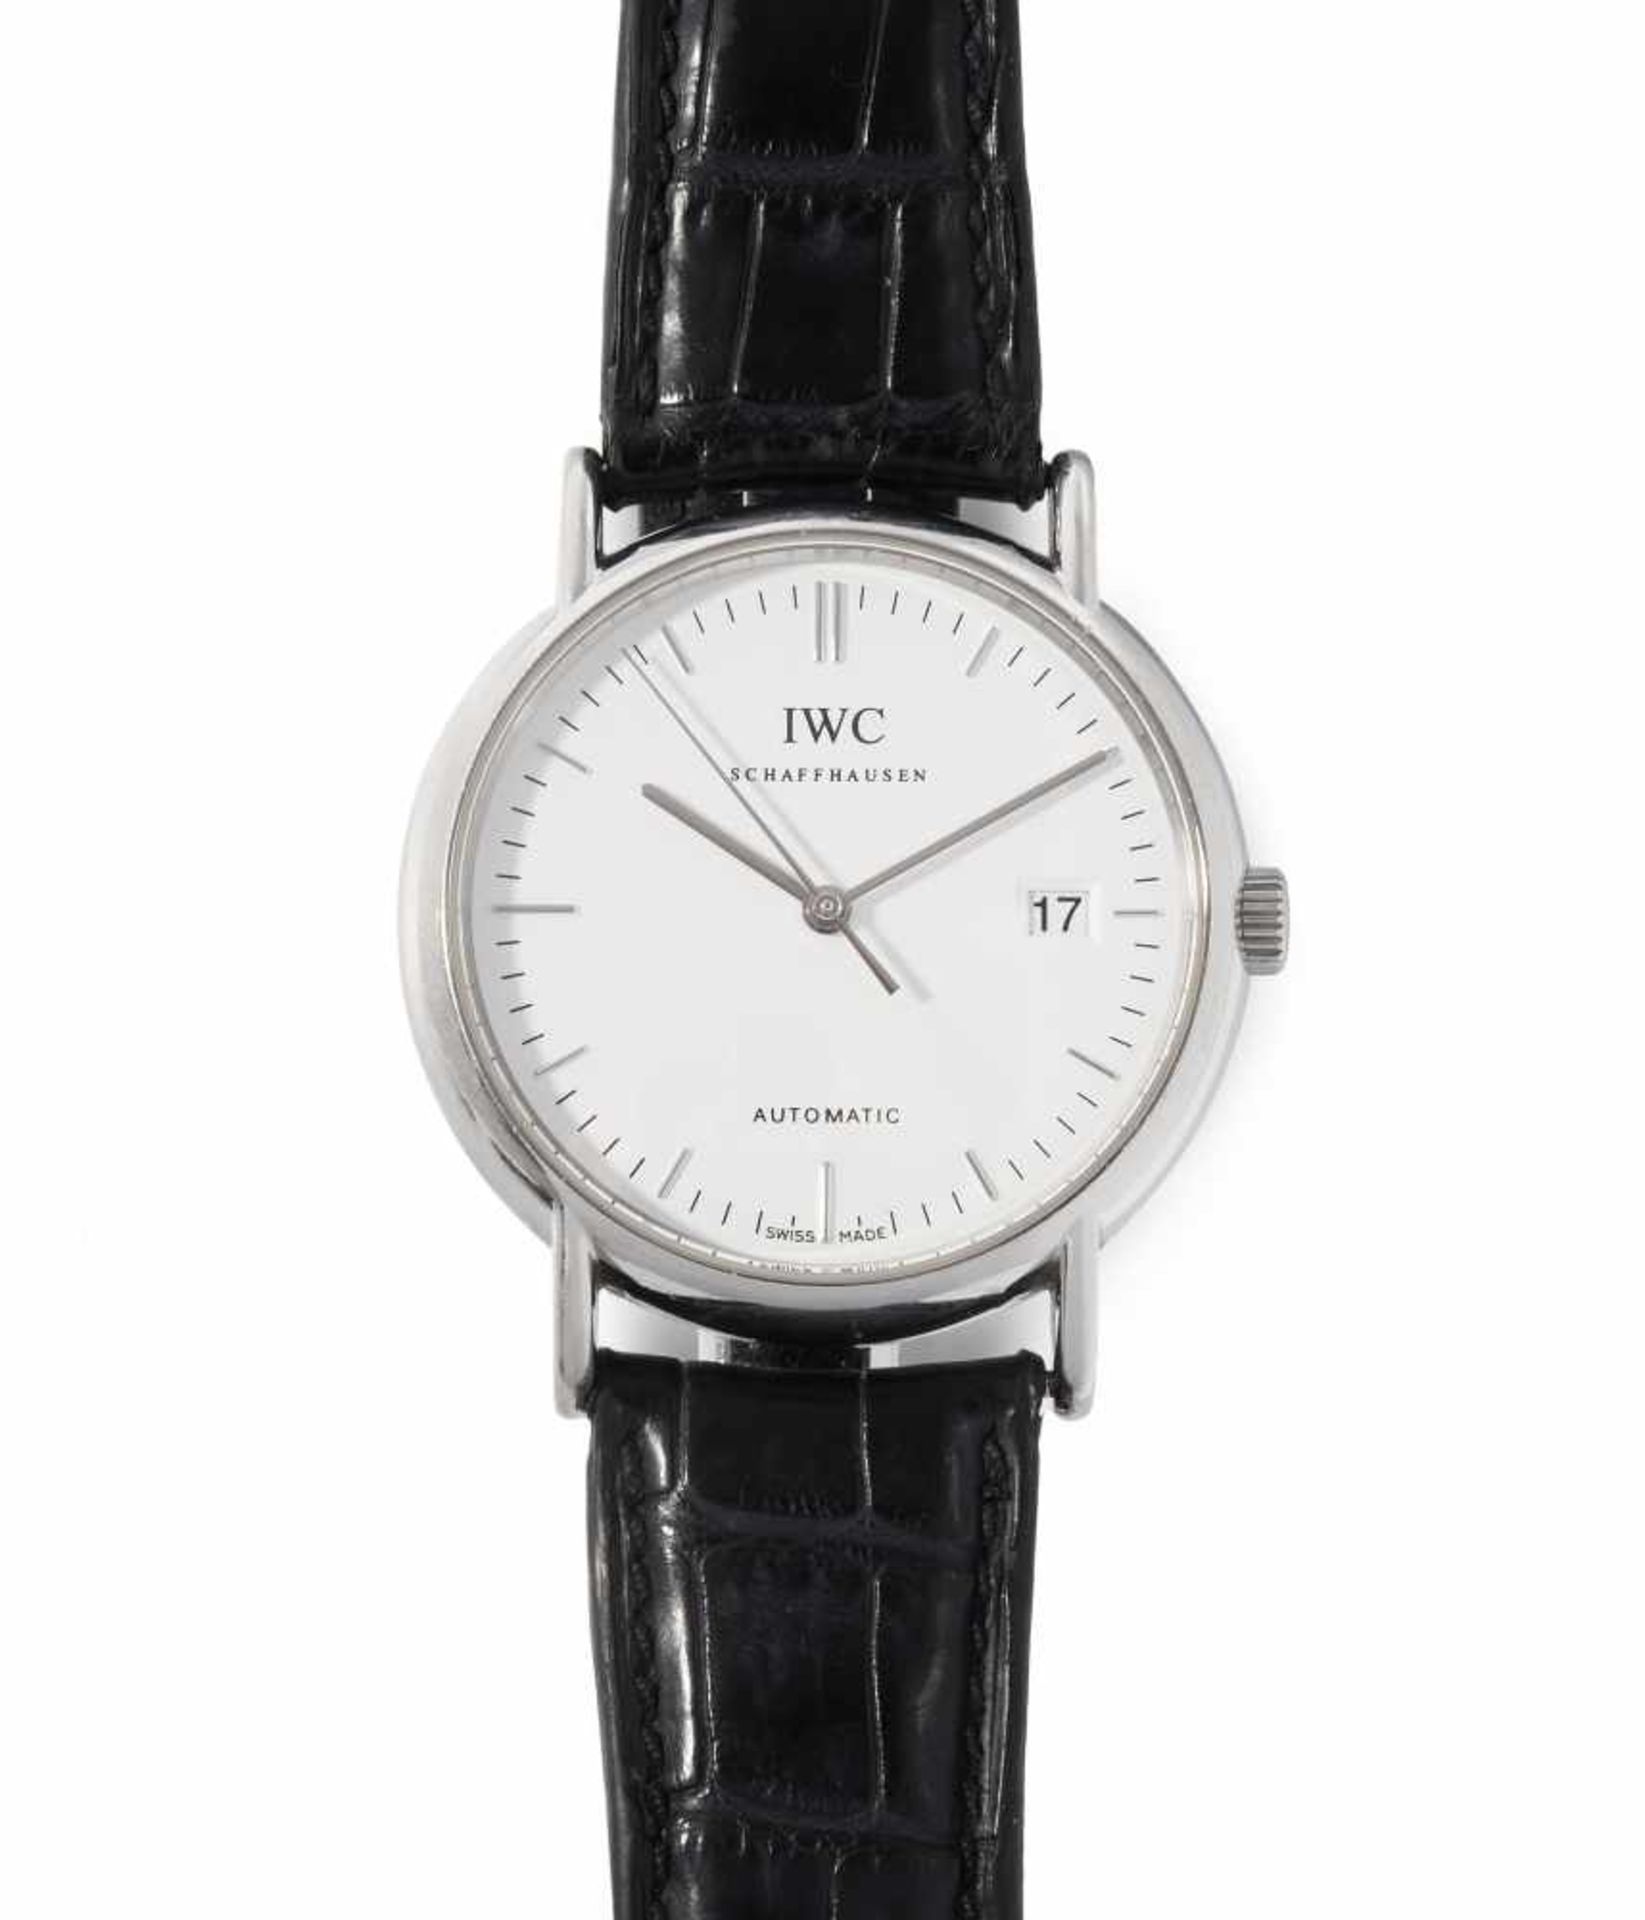 IWC PortofinoRunde, automatische Armbanduhr 1995 in Edelstahlgehäuse. Boden verschraubt,